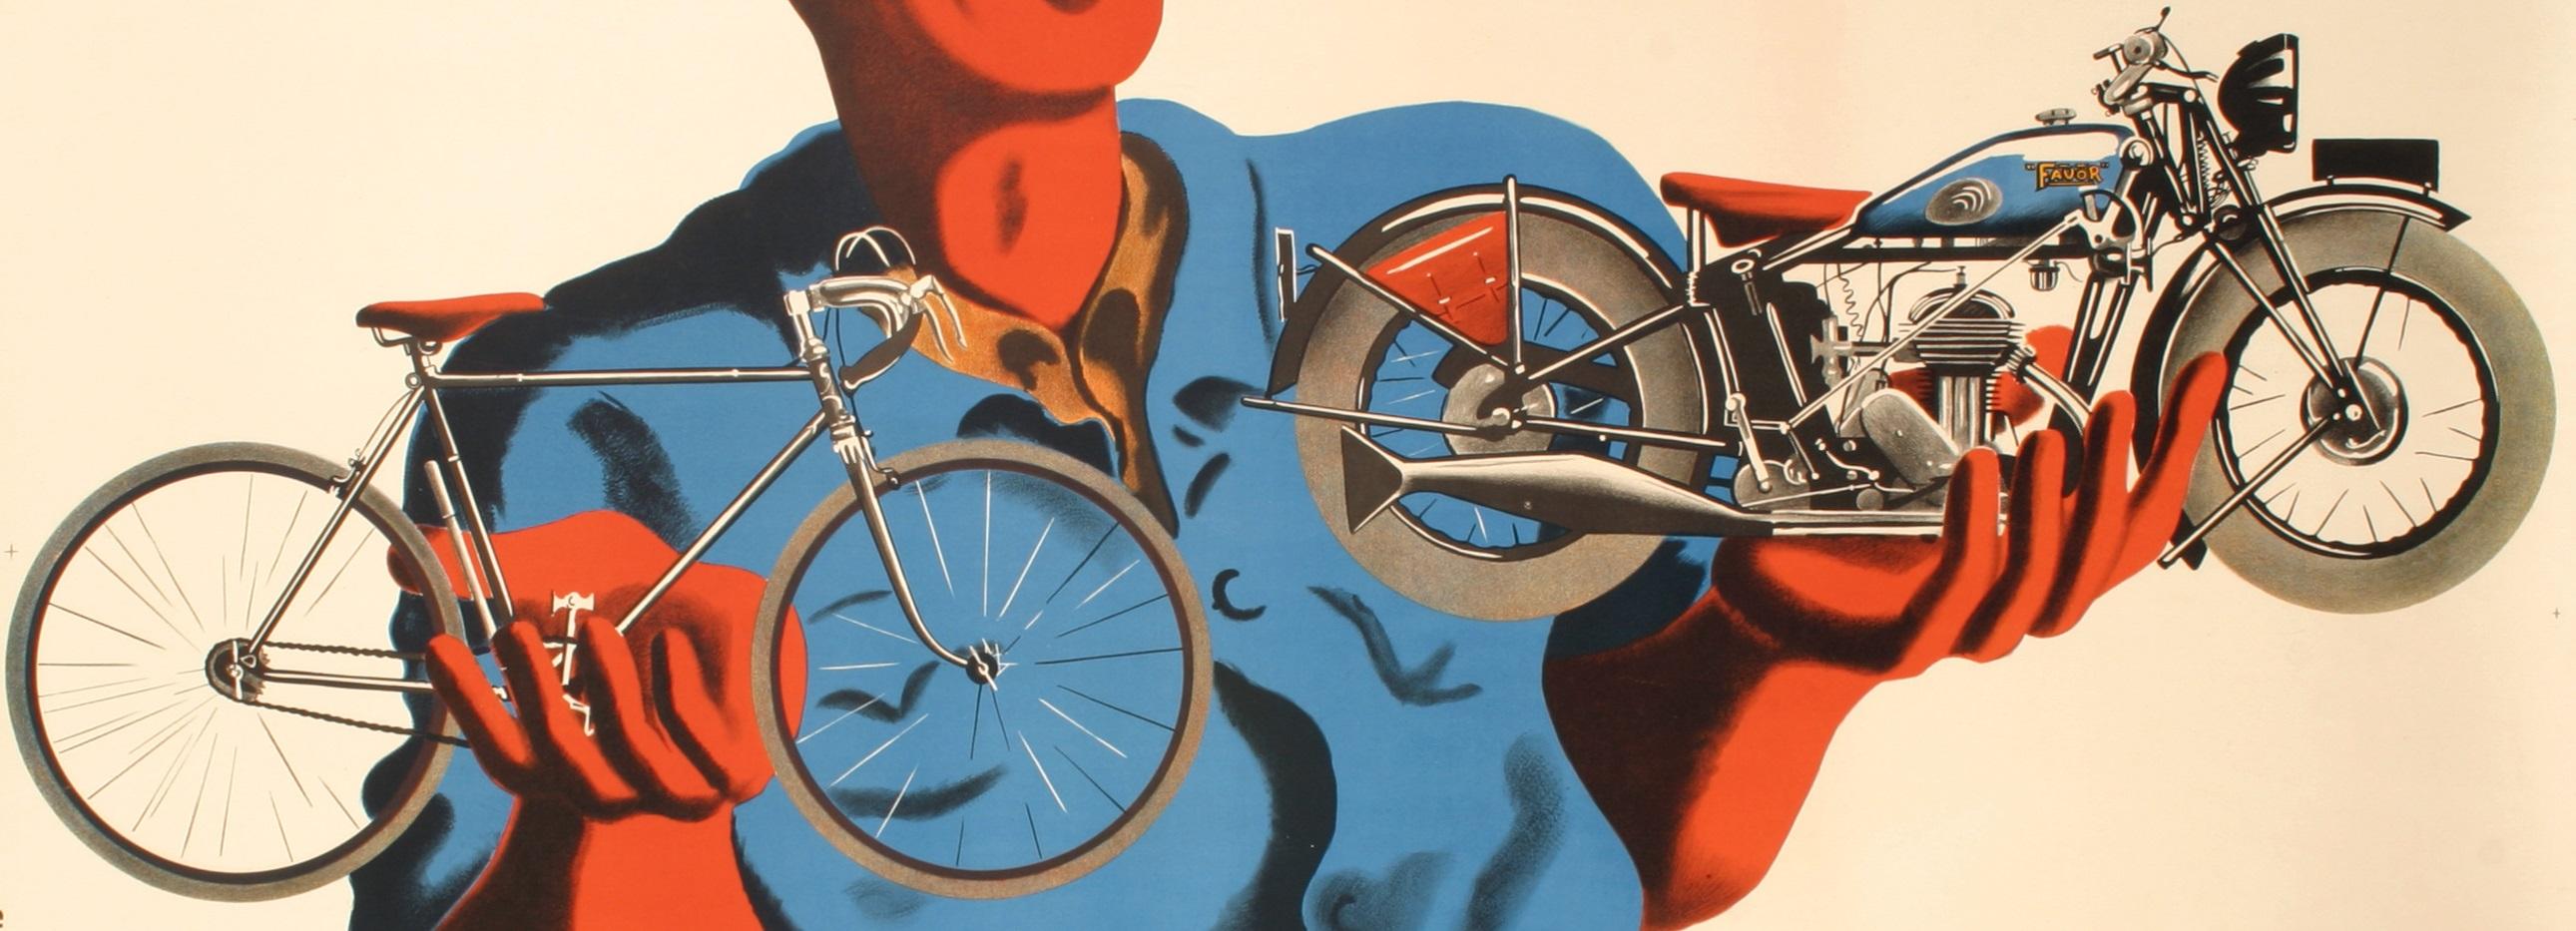 Original Art-Déco-Plakat von Bellenger für Cycle Favor aus dem Jahr 1937.

Künstler: Bellenger Jacques und Pierre
Titel : Favor - De la belle mécanique ! Fahrräder - Motos
Datum: 1937
Größe: 23,6 x 15 Zoll / 60 x 38 cm
Druckerei : Etbts de la